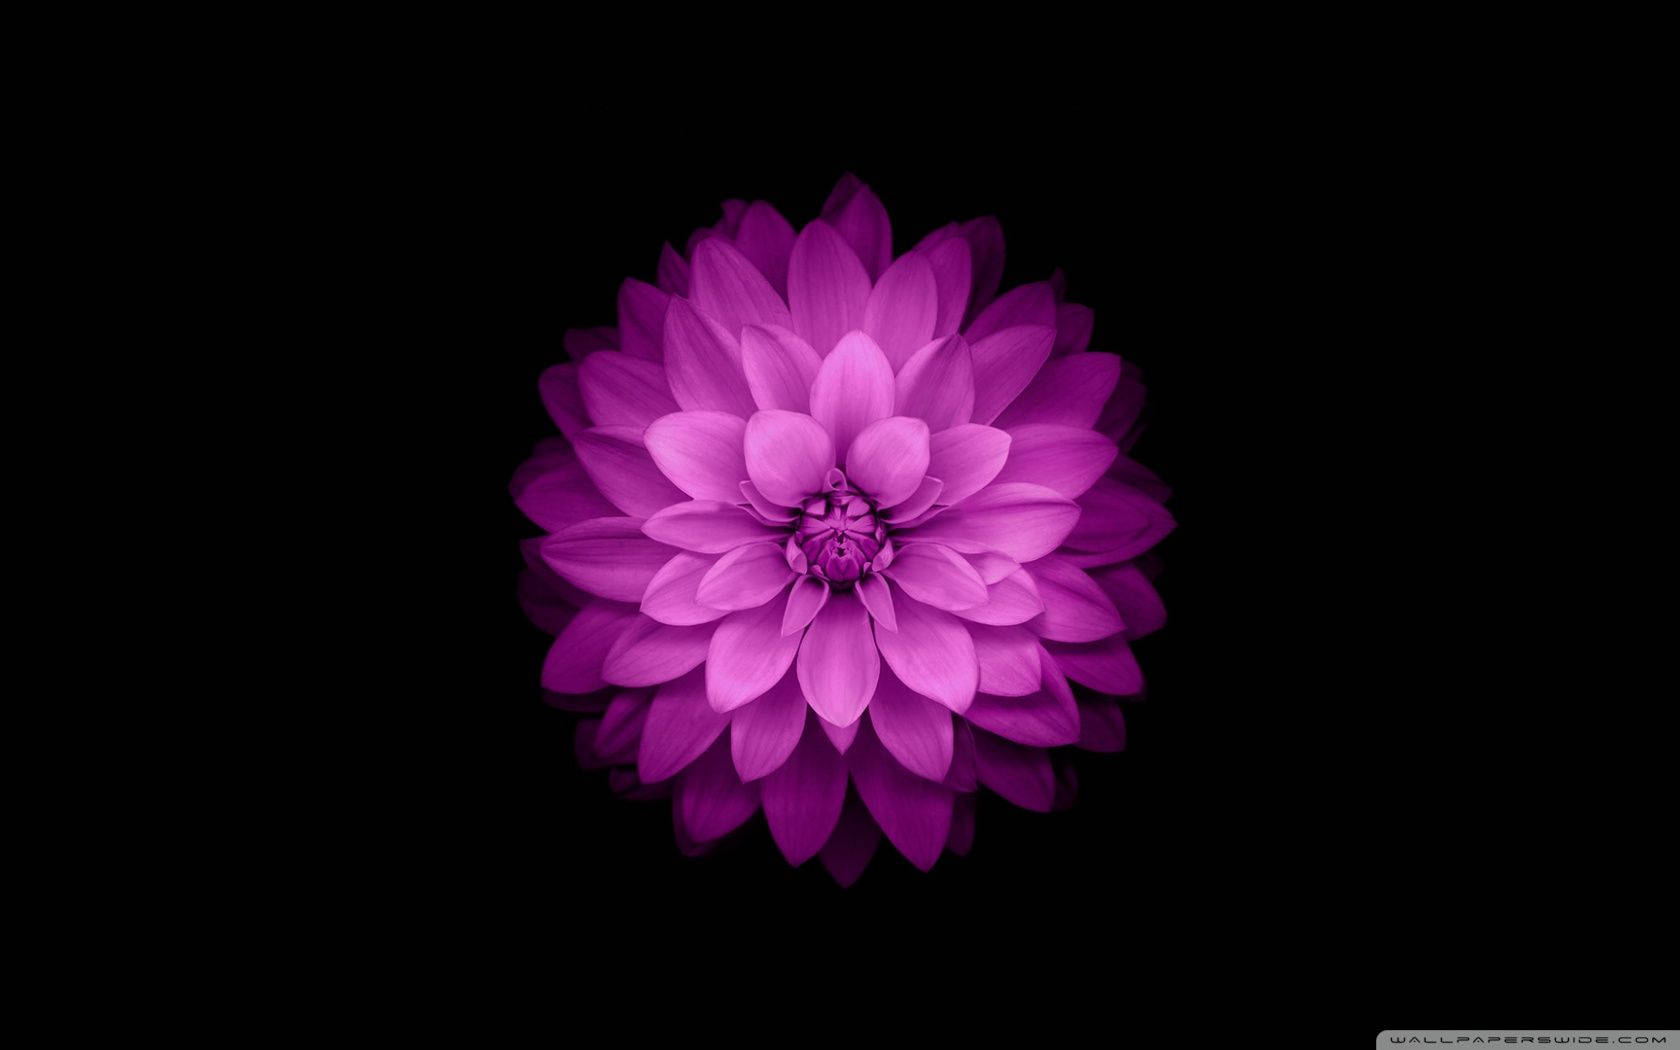 Purple Flower On Black Apple Background